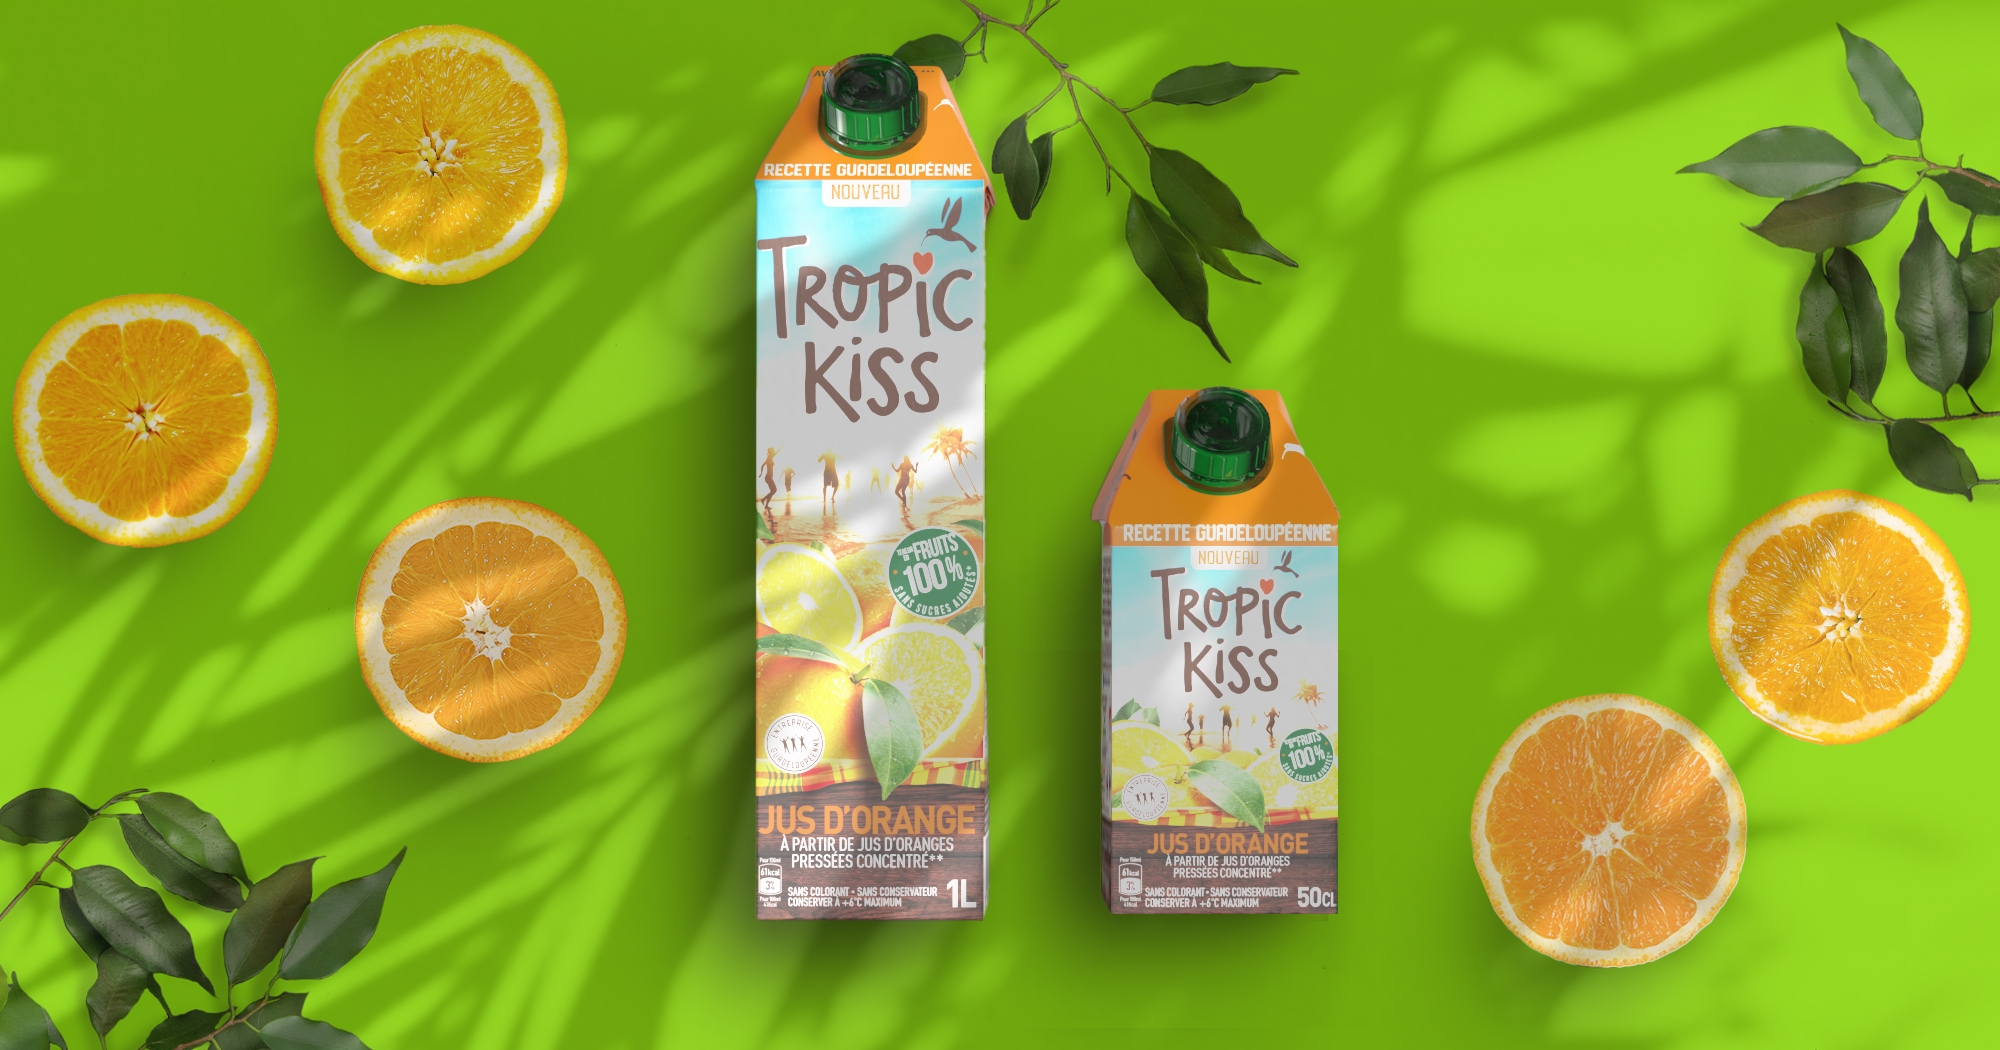 Gamme de packagings Tropic Kiss, vue de dessus, sur fond vert, avec des oranges et des feuilles vertes